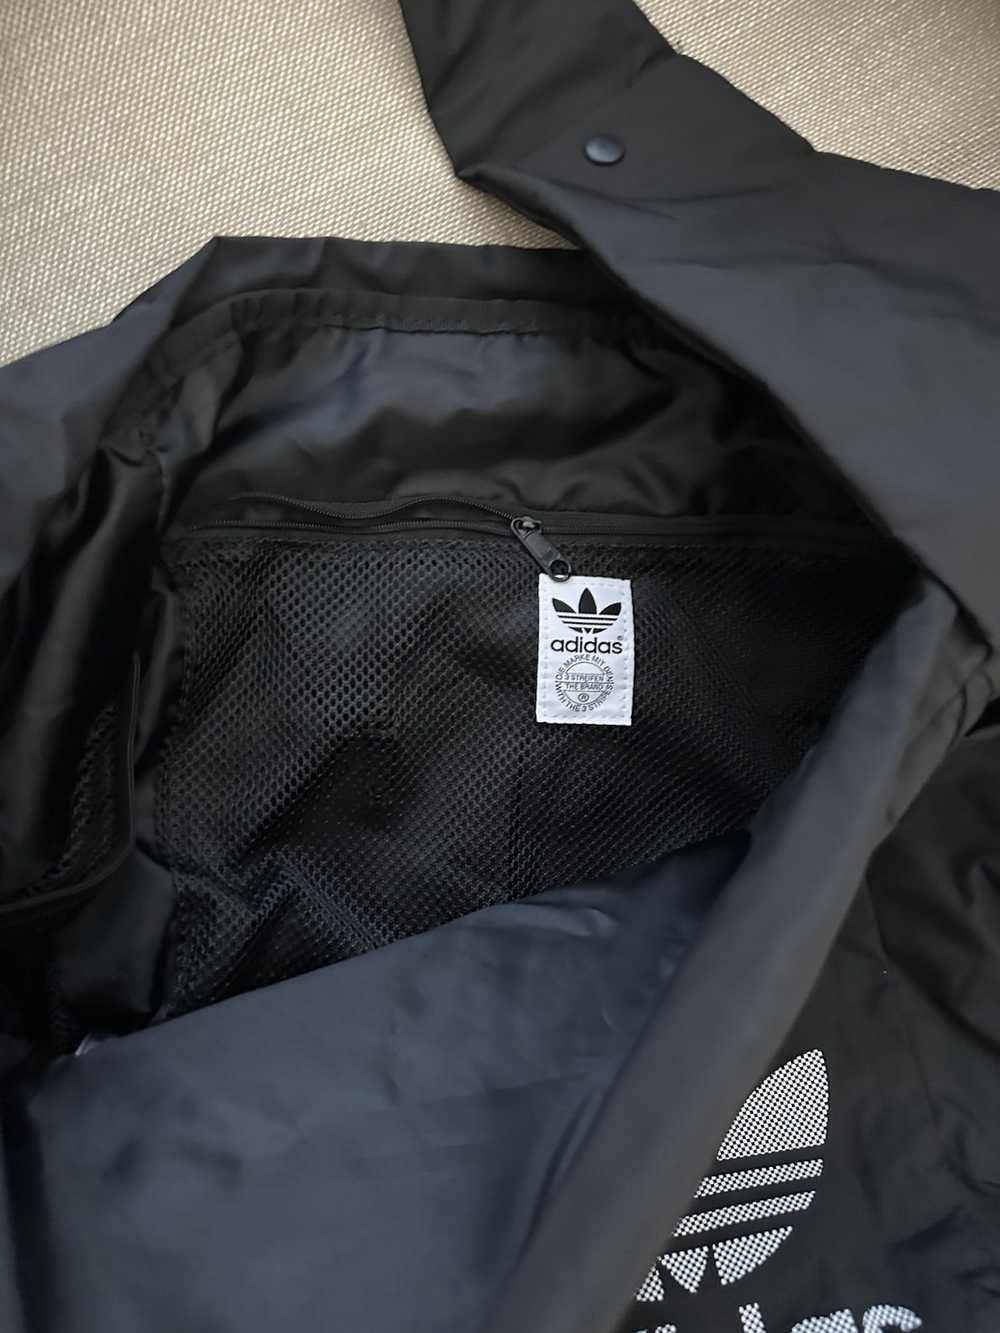 Adidas Adidas 90% New bag - image 2